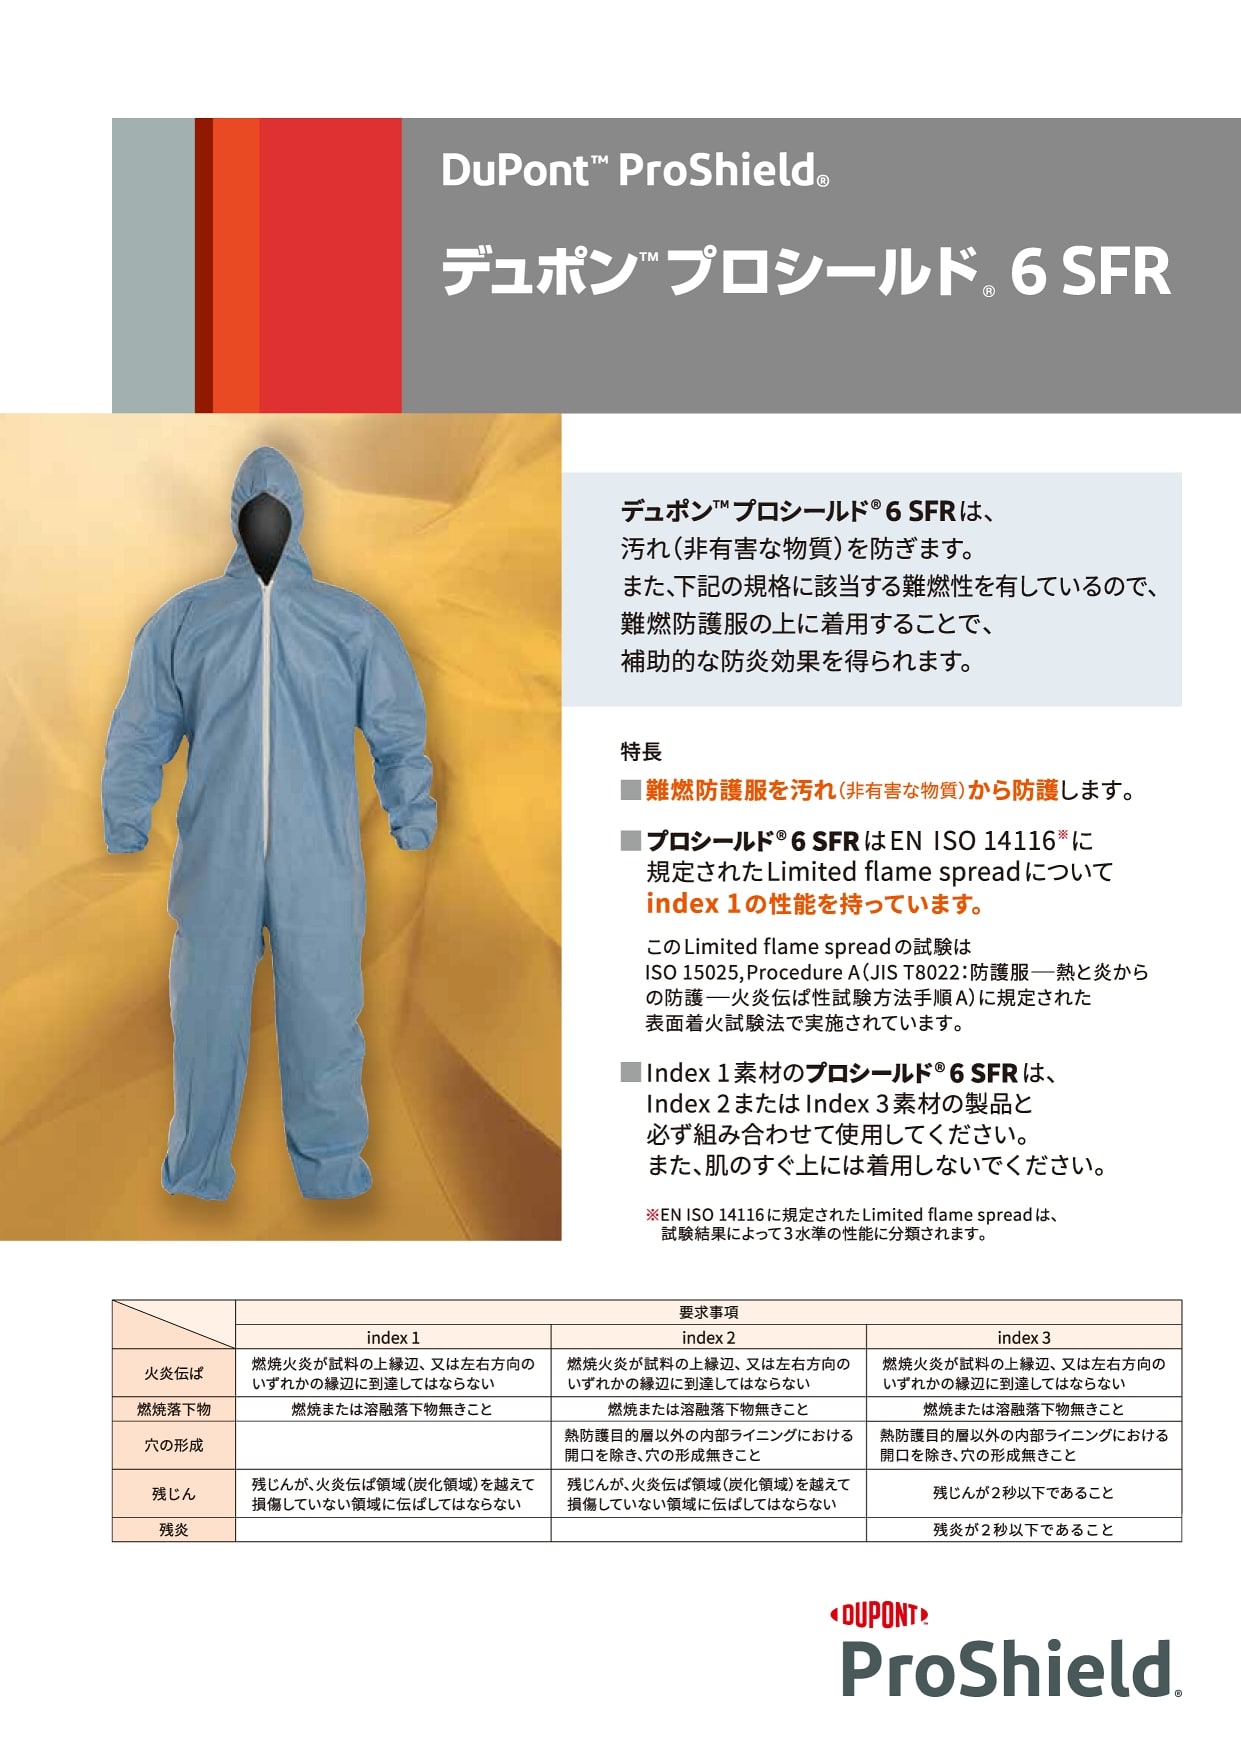 (デュポン アゼアス) タイベックソフトウェア II 型 (10着) (防護服 保護服 作業服) - 2